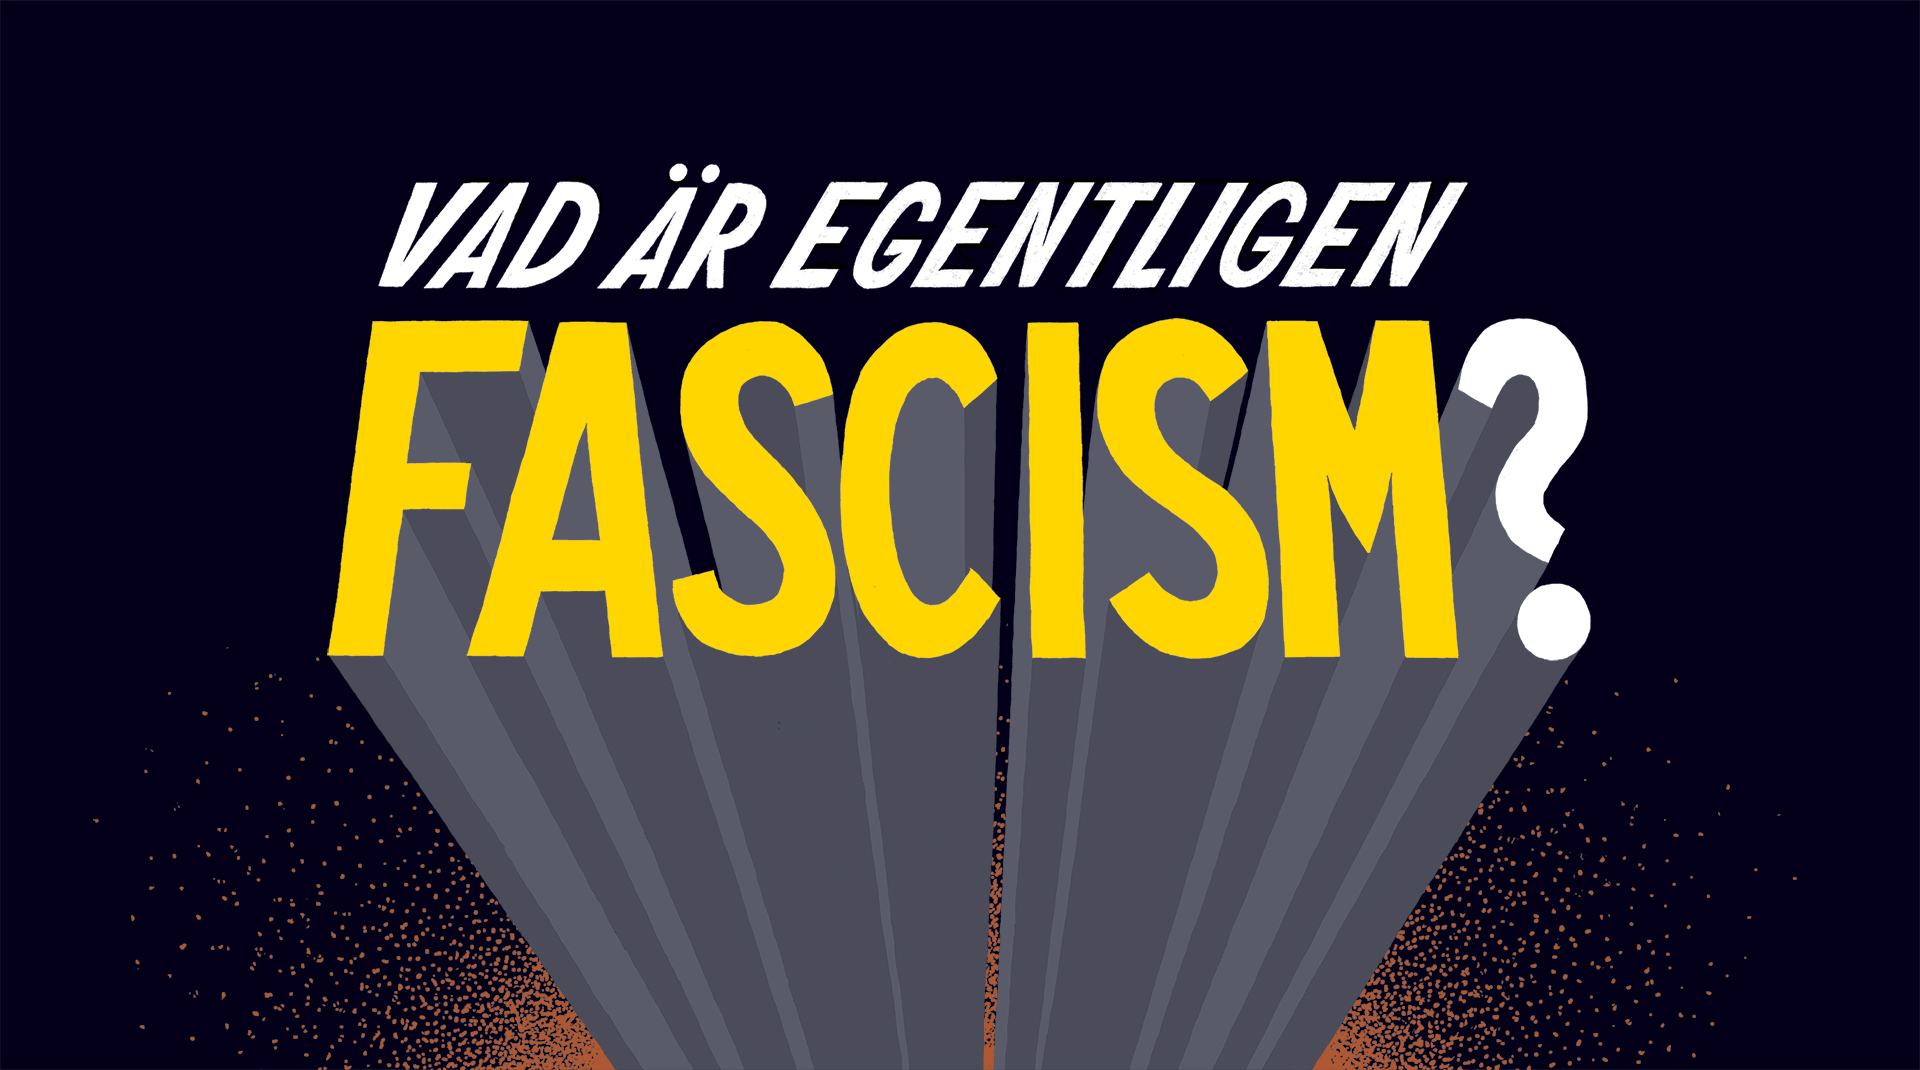 Vad är egentligen fascism?